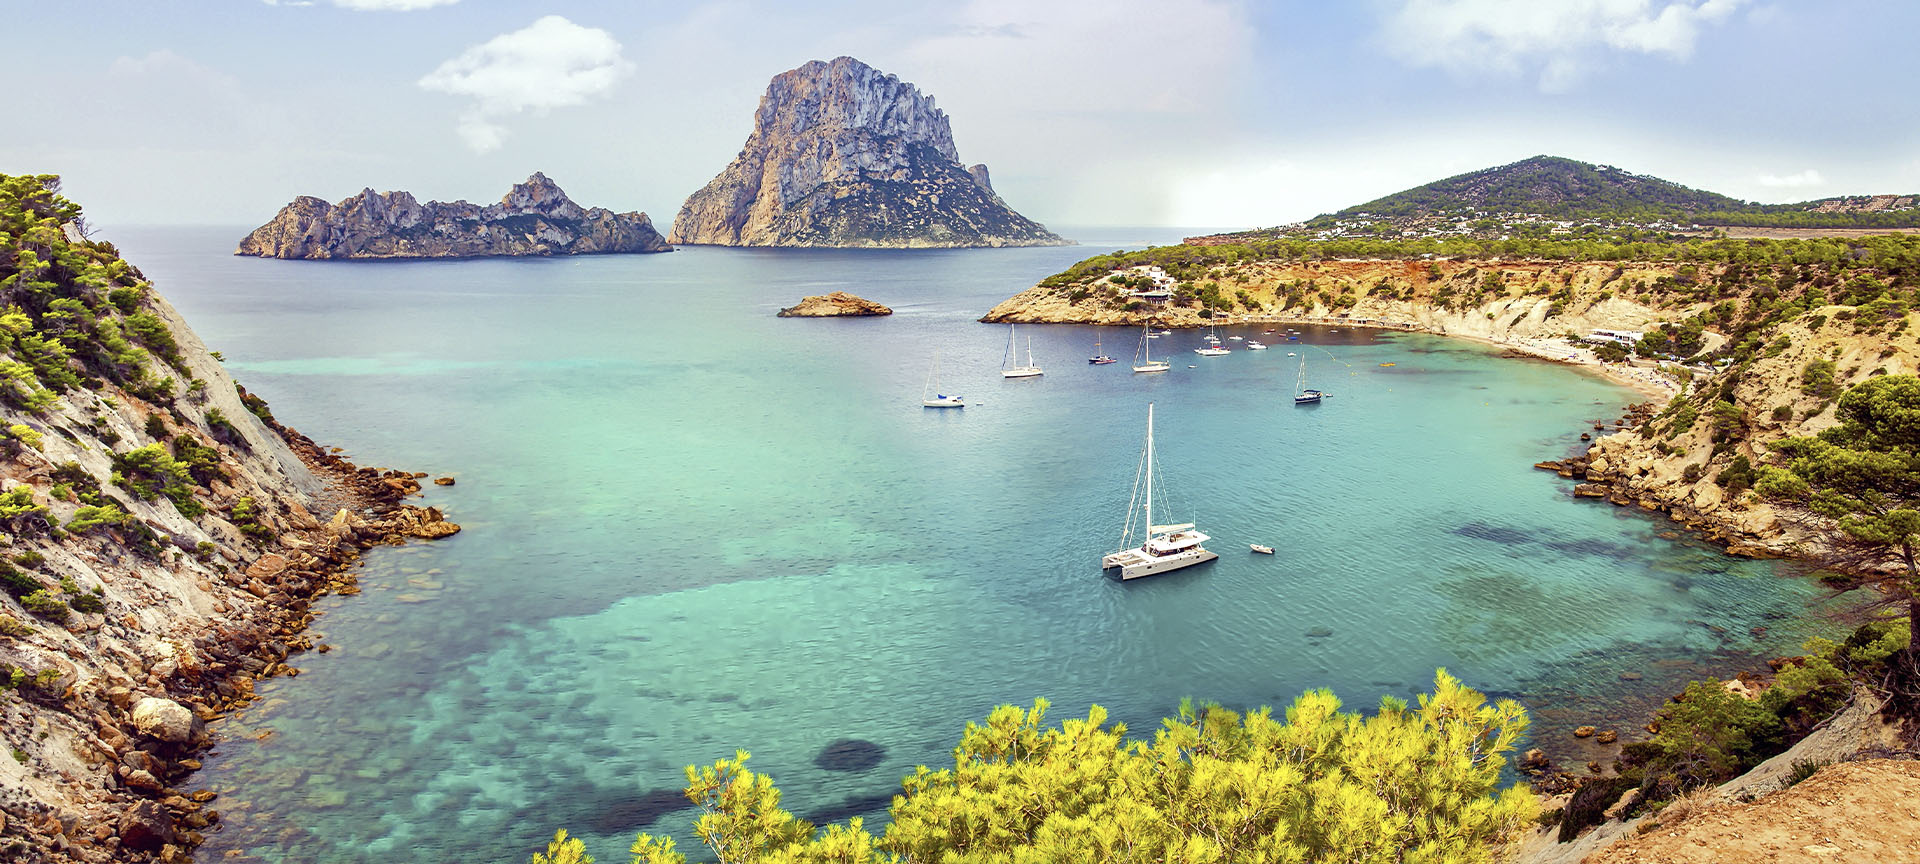 A cove on the island of Ibiza (Balearic Islands)